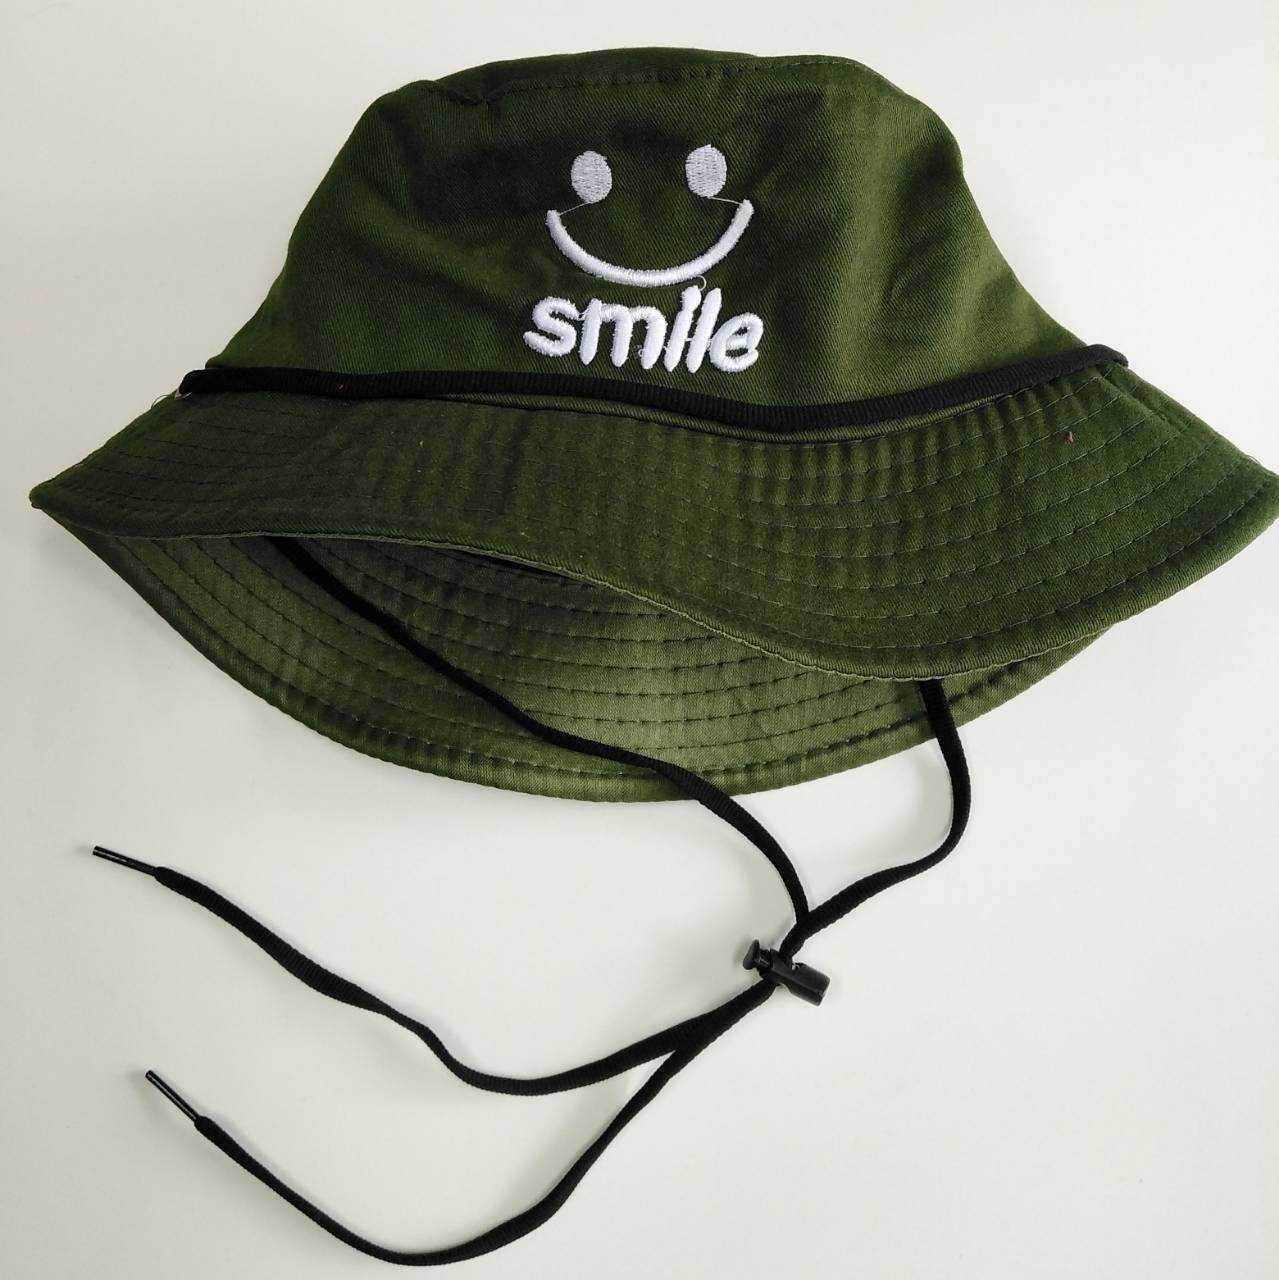 หมวกแฟชั่น หมวก หมวกบักเก็ตมีสาย (ยิ้มSmle) หมวกกันแดด หมวกบักเก็ต AM0025